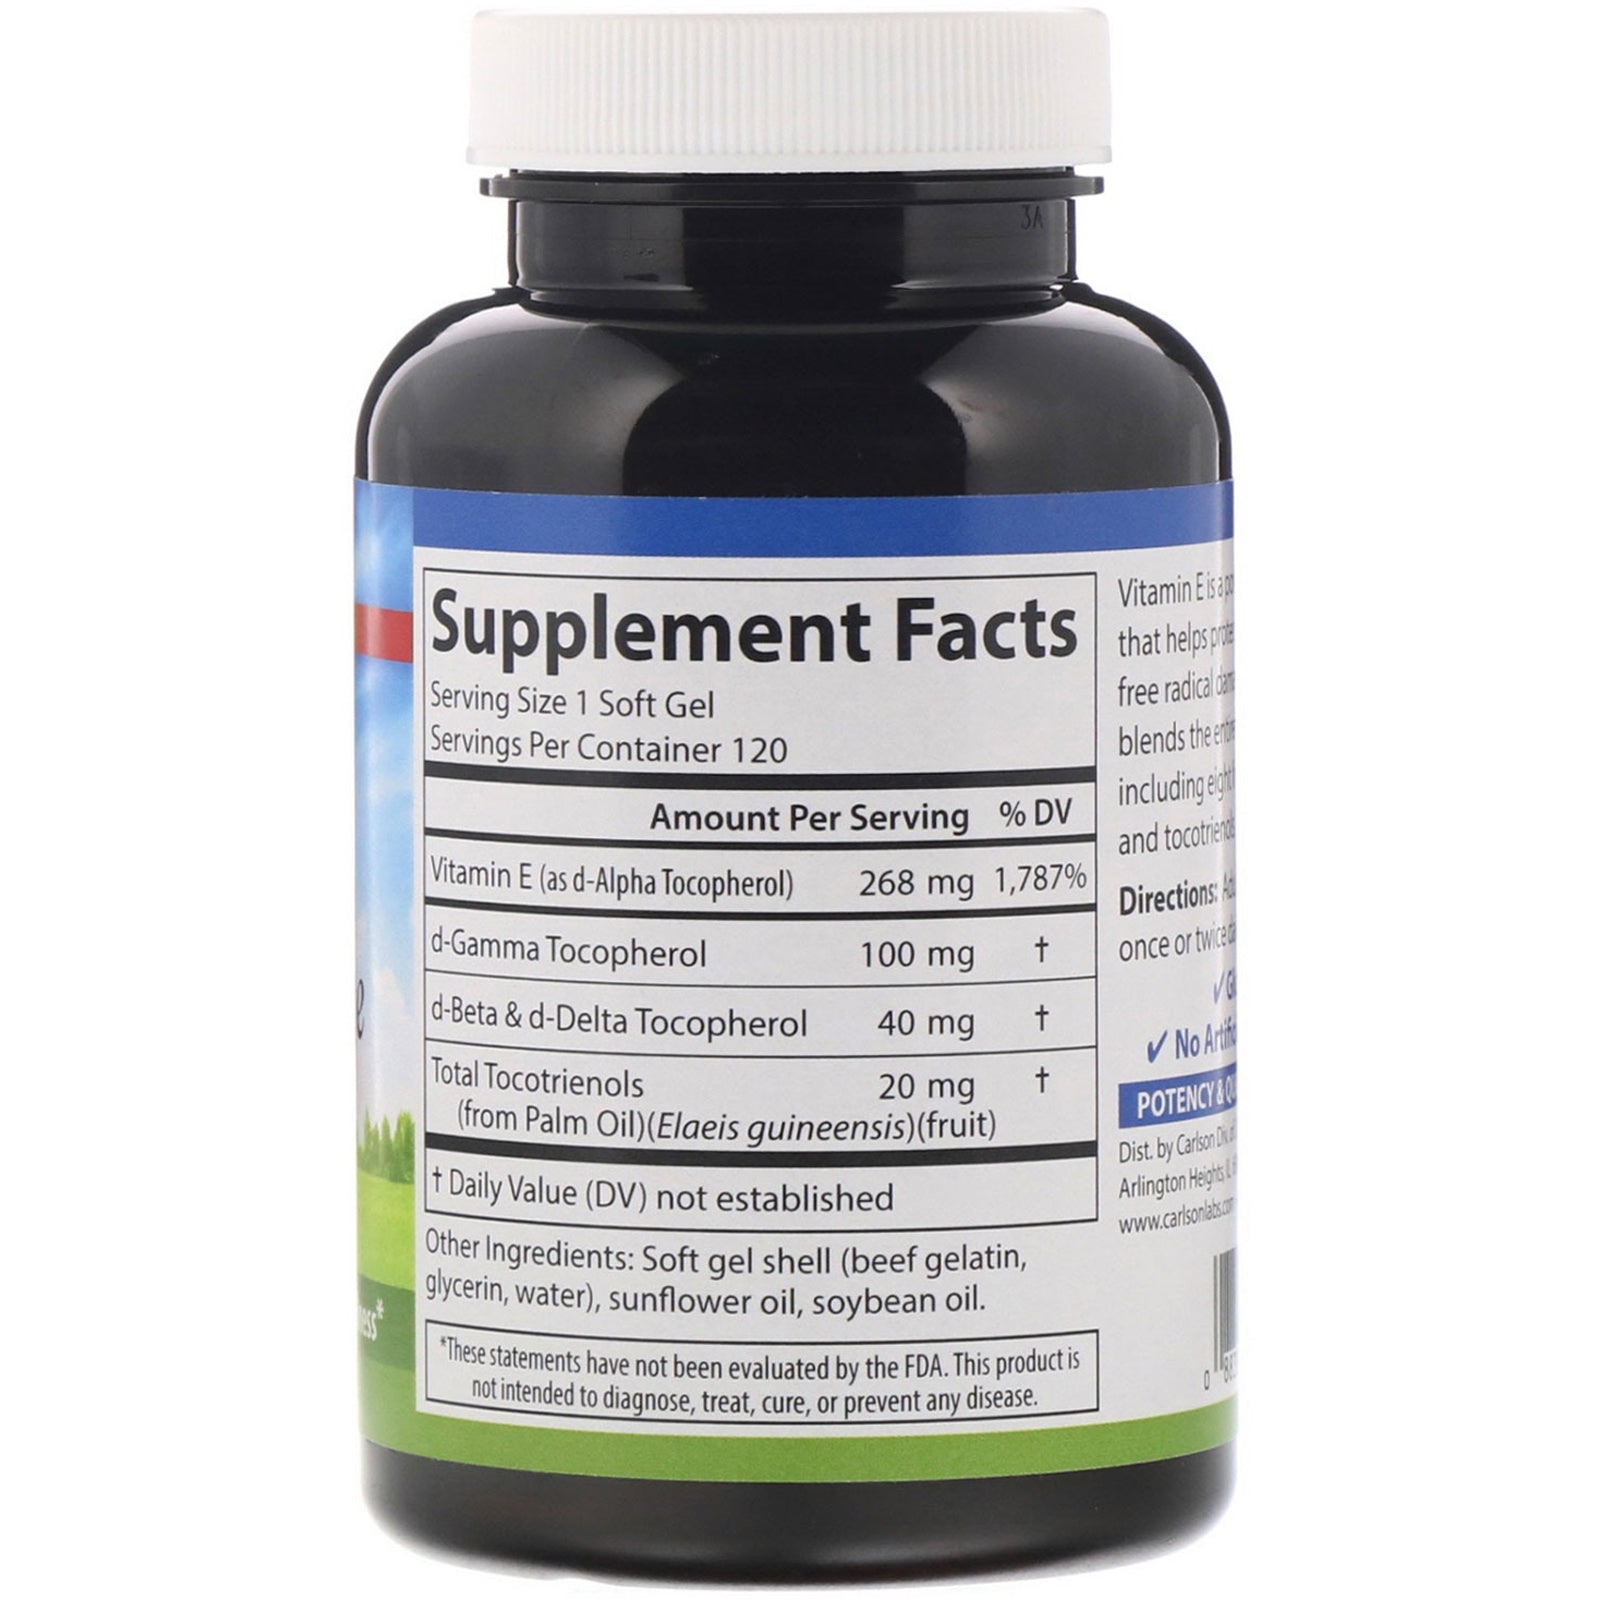 Carlson Labs, E-Gems Elite, Vitamin E, 268 mg (400 IU), 120 Soft Gels